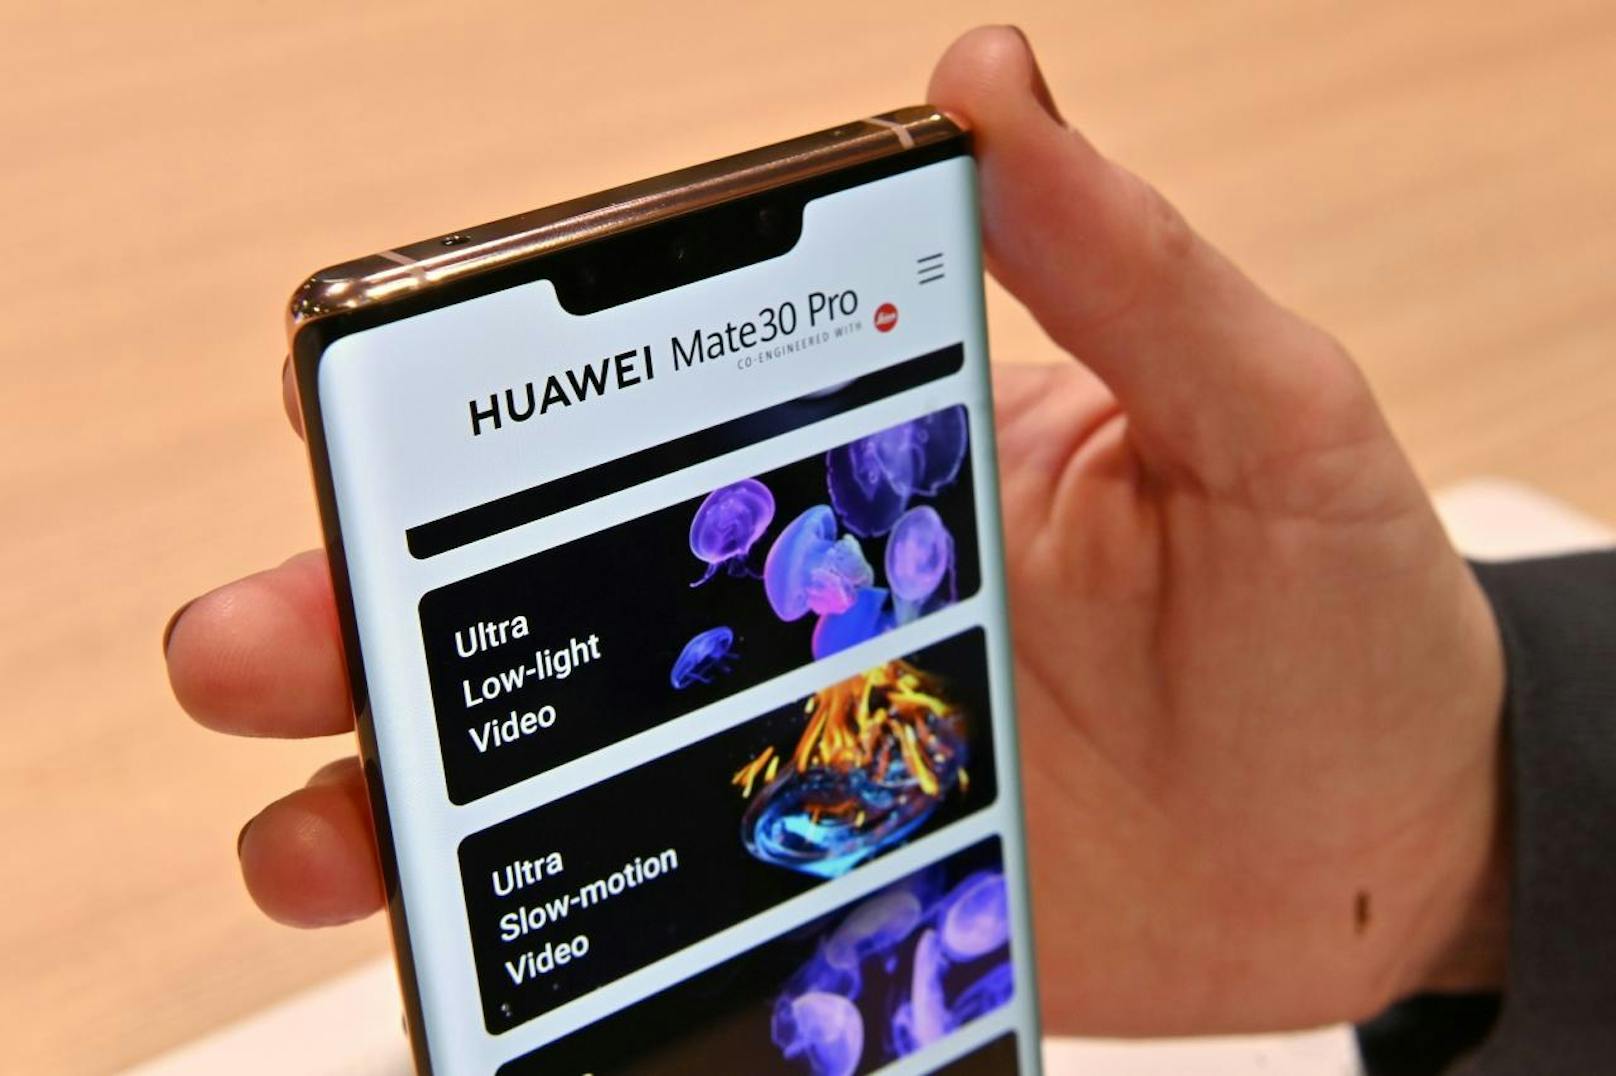 Dafür pumpt Huawei drei Milliarden US-Dollar und 4.000 Angestellte alleine in die Entwicklung des HMS. 400 Millionen monatlich aktive Nutzer zählt das Herzstück, die AppGallery als Alternative zum Playstore, bereits. Was noch fehlt, sind die großen Apps.